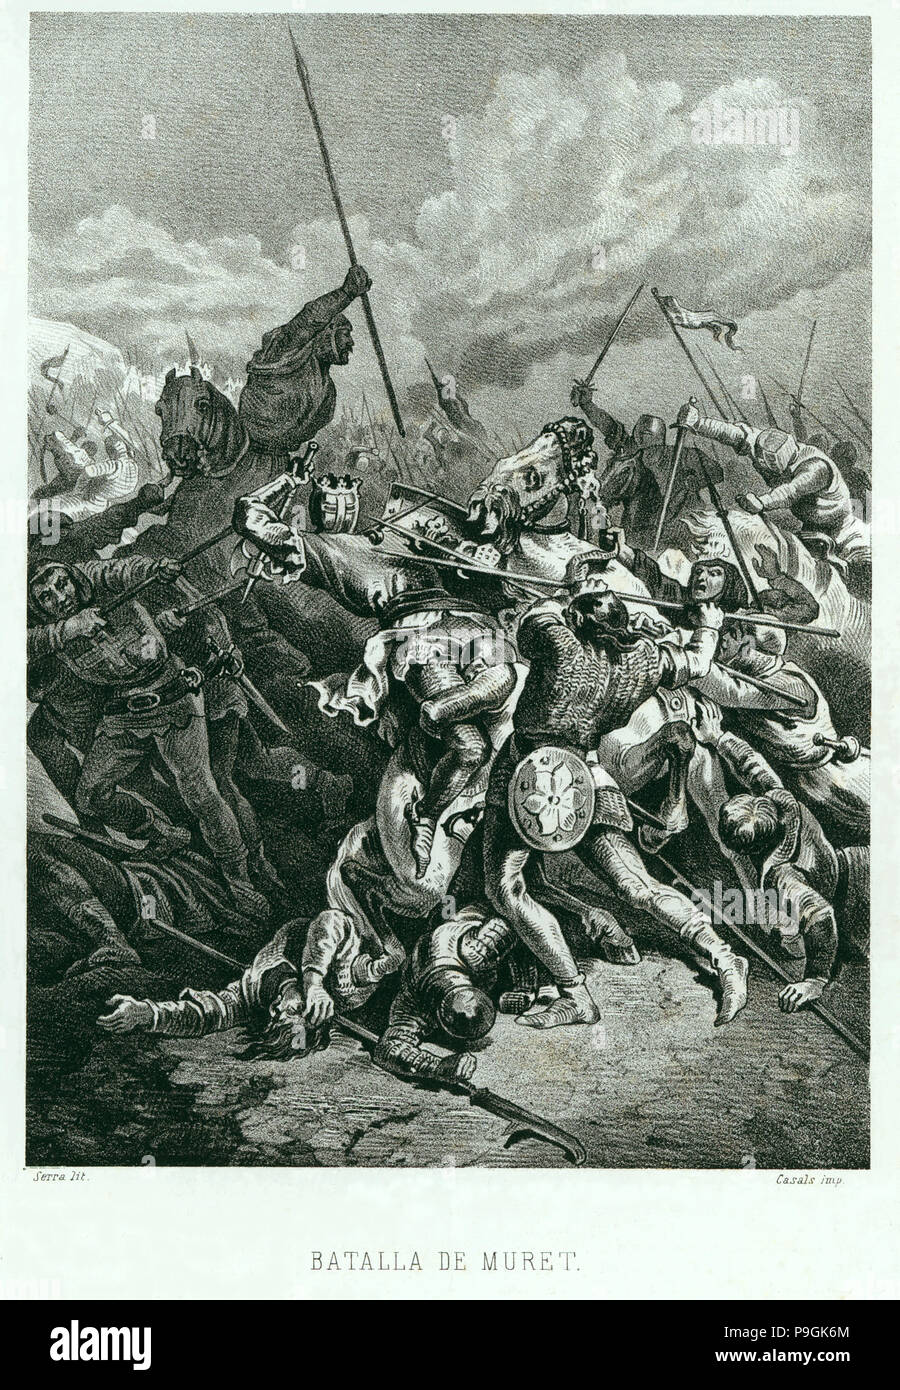 Schlacht bei Muret, 1213, König D. Pedro II. von Aragon starb in der Schlacht, Gravur. Stockfoto